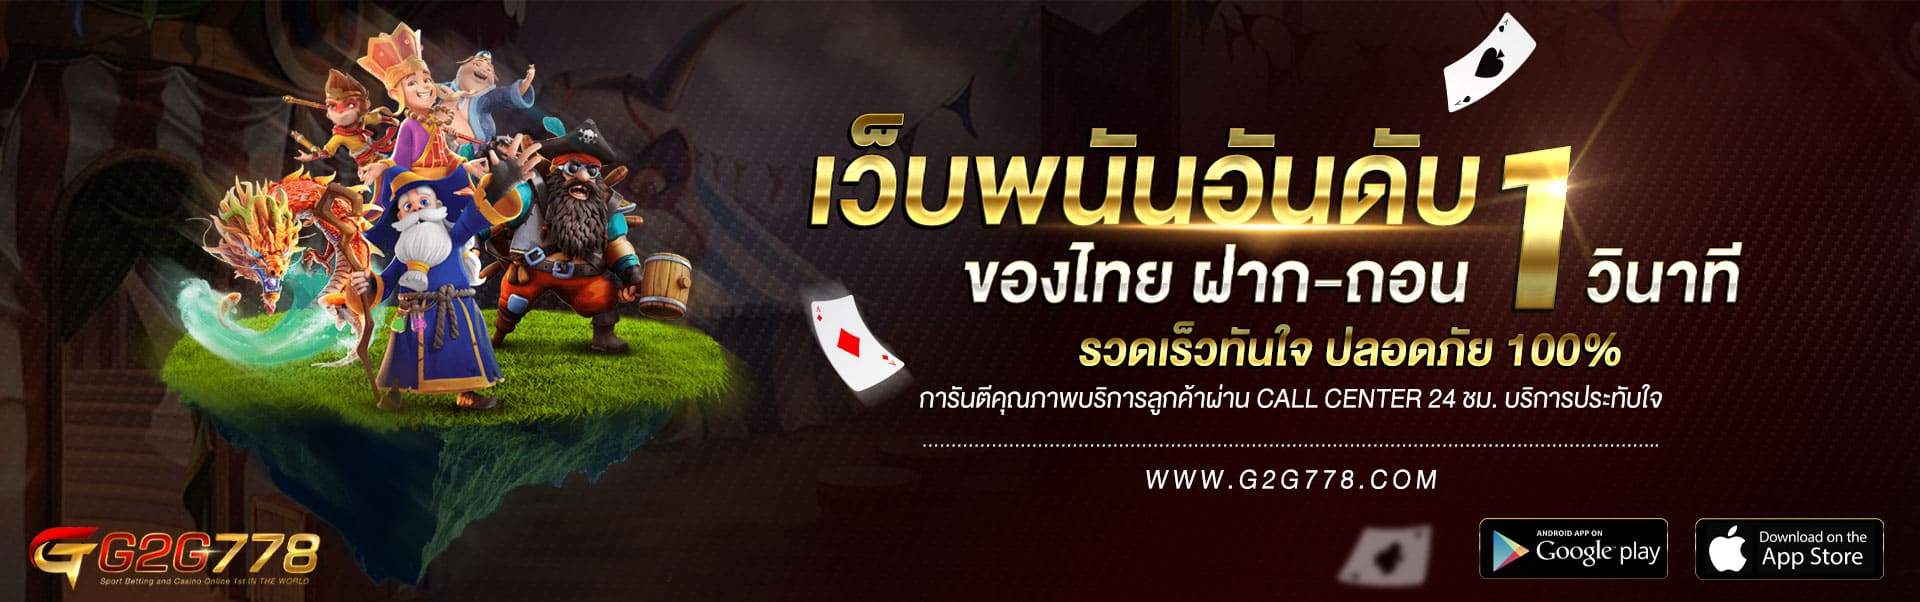 AjnBet G2G778 เว็บพนันอันดับ 1 ของไทย บาคาร่า คาสิโนเดิมพันง่าย